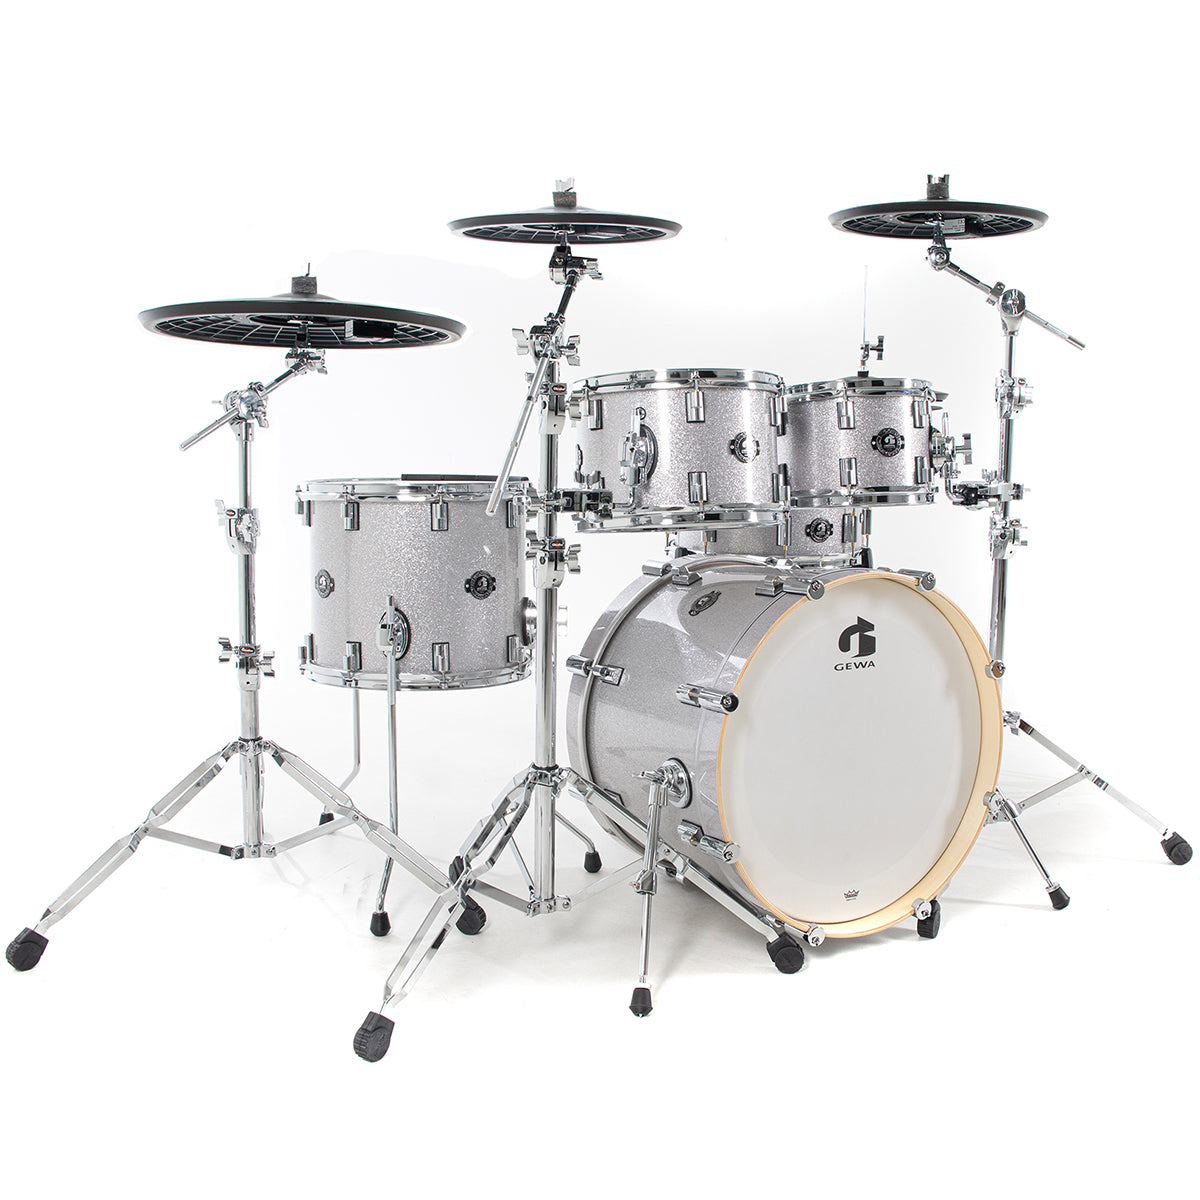 GEWA G9 Pro 5 SE Electronic Drum Set - Silver Sparkle, View 3